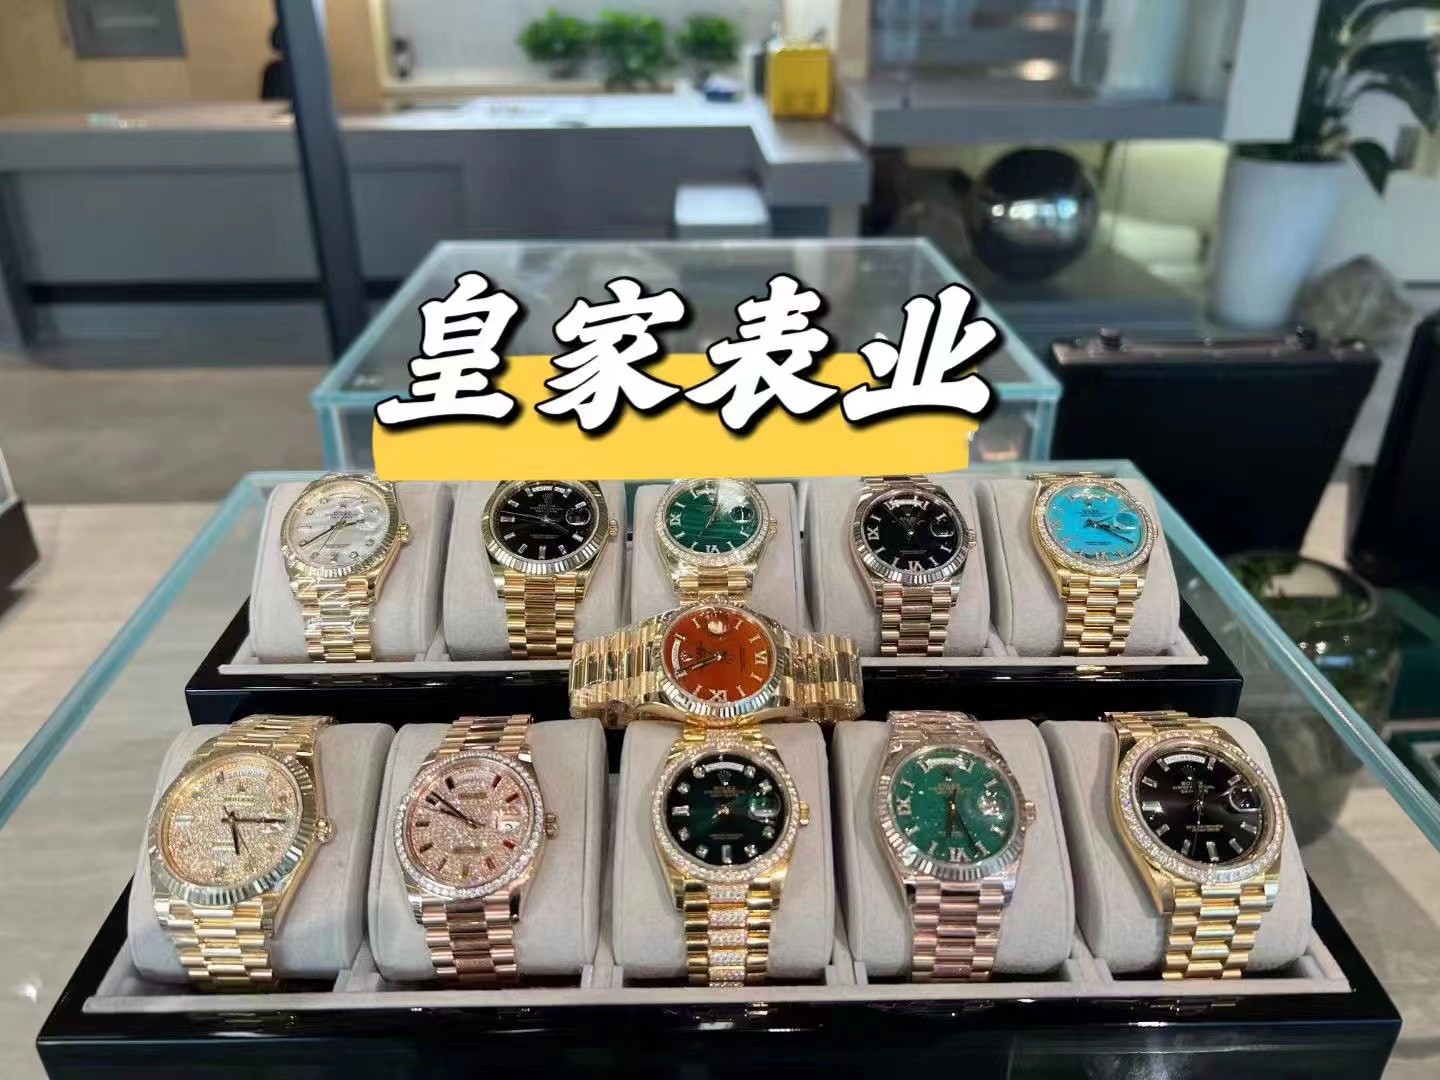 一般高仿手表在哪里买，推荐5个购买渠道-图片2